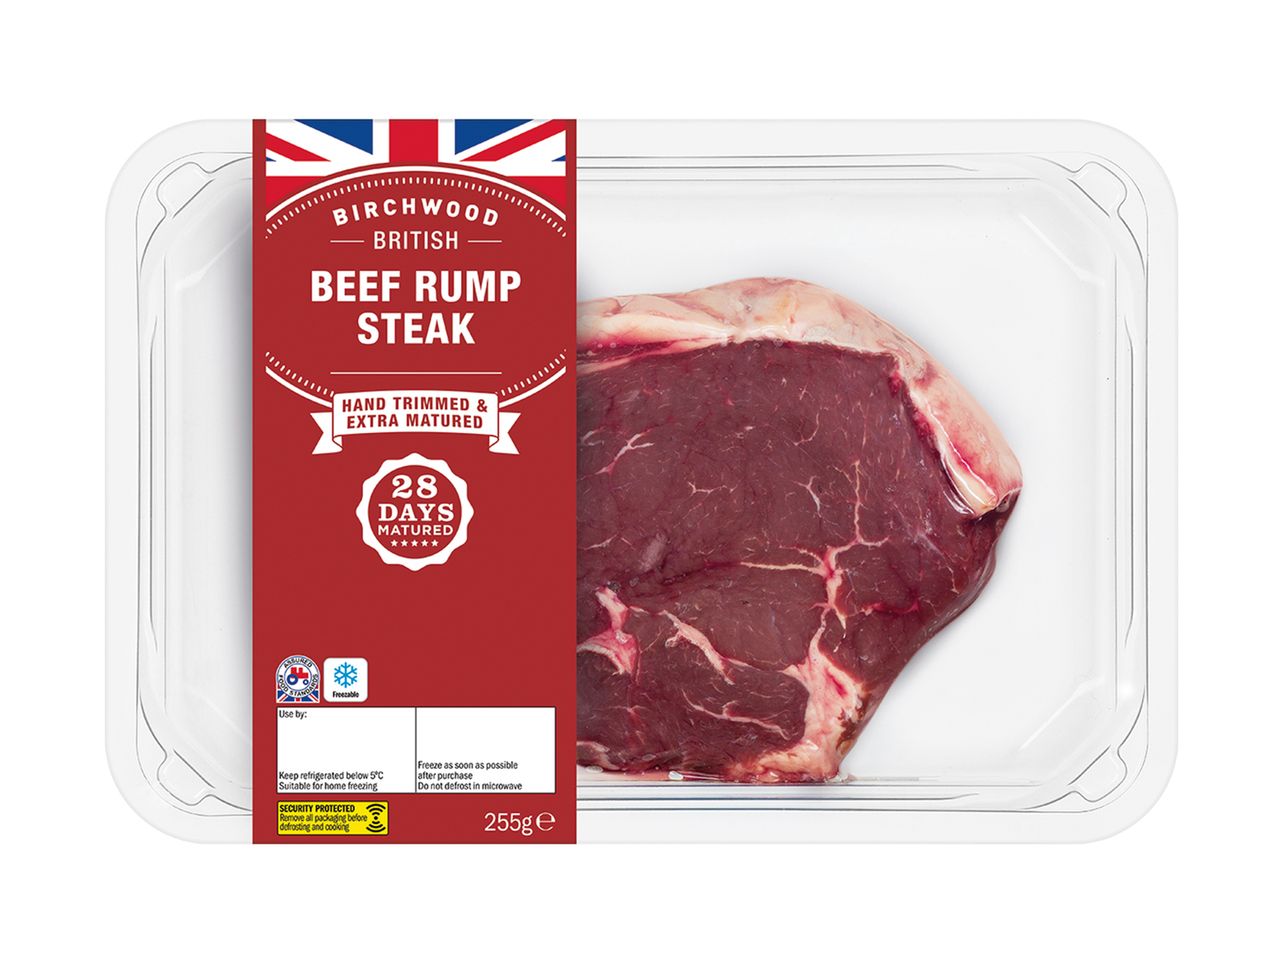 Go to full screen view: Birchwood British Beef Rump Steak - Image 1